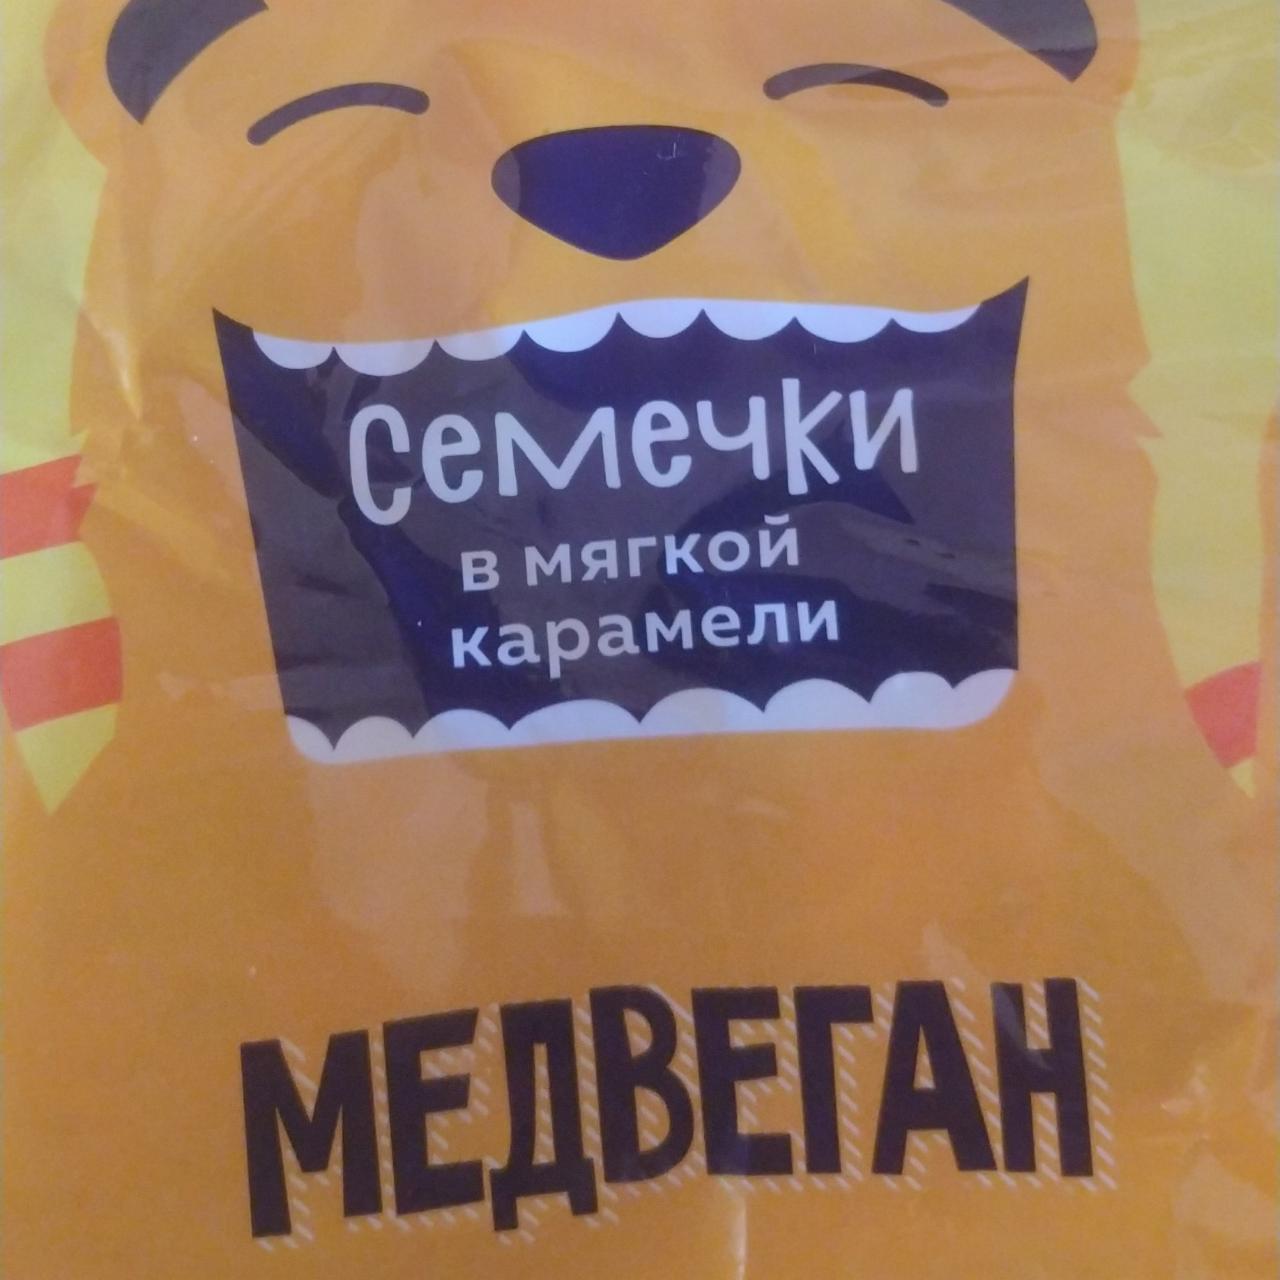 Фото - конфеты глазированные на основе мягкой карамели Семечки мягкой карамели Медвеган